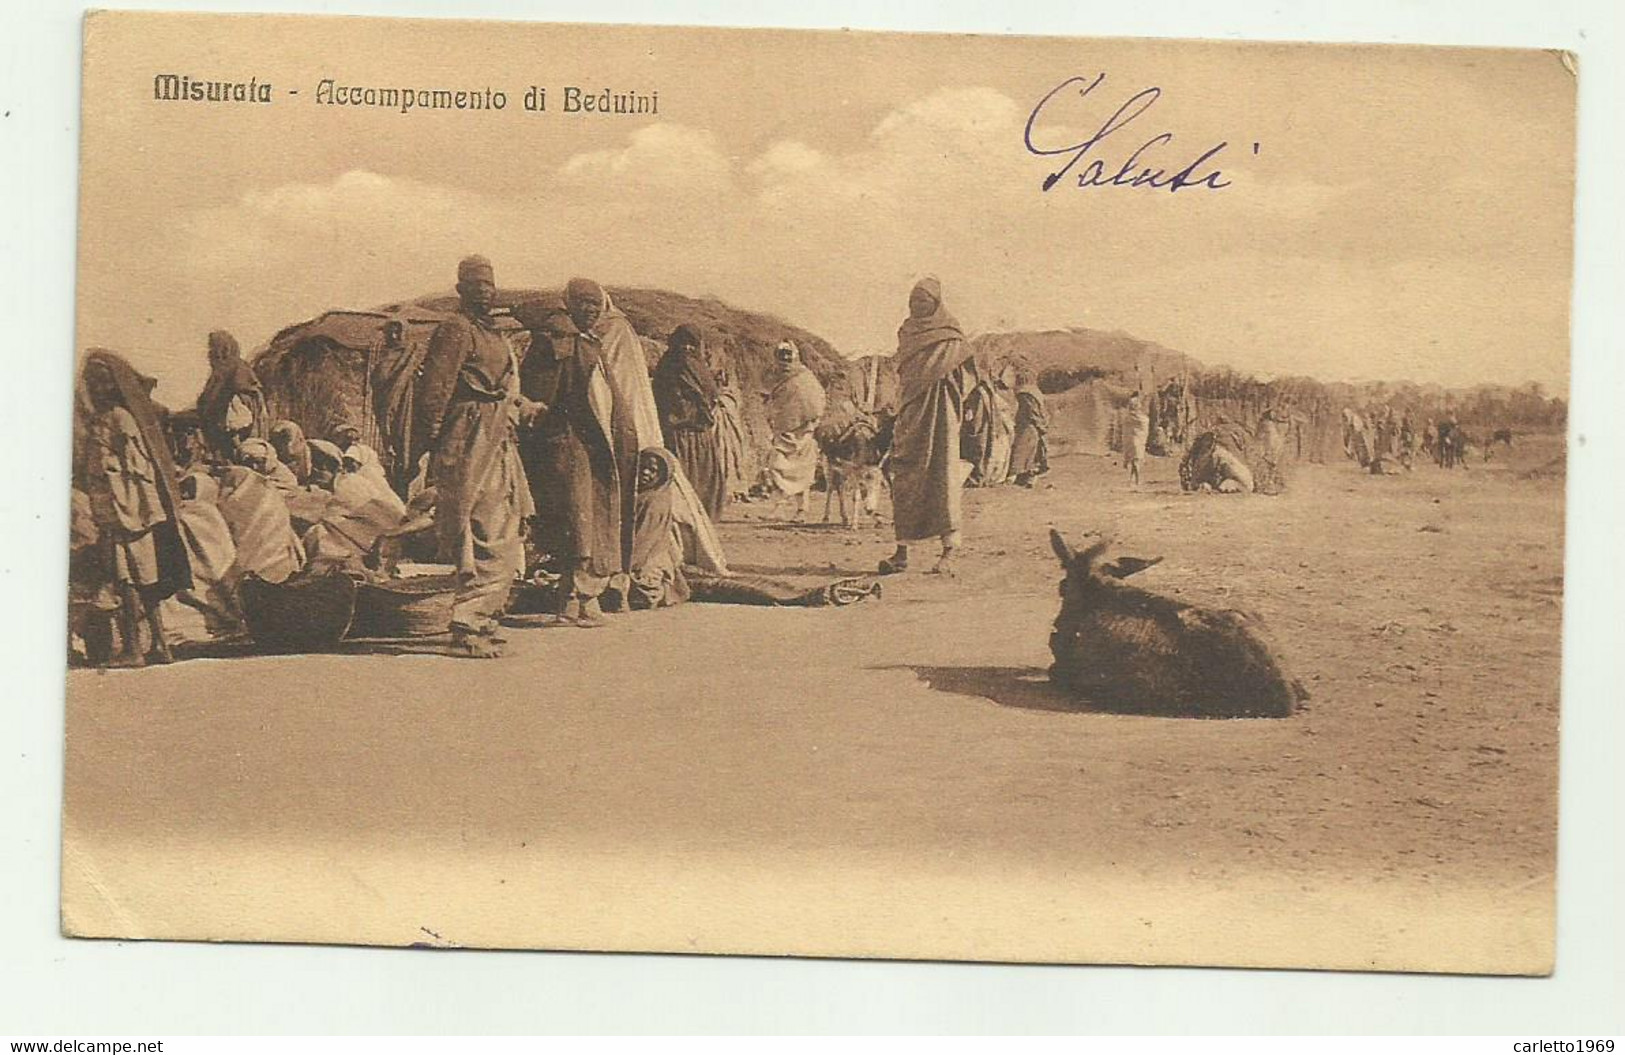 MISURATA - ACCAMPAMENTO DI BEDUINI - TIMBRO R.POSTE COMANDO 52o BATT.NE BERSAGLIERI 1915  - VIAGGIATA FP - Libya